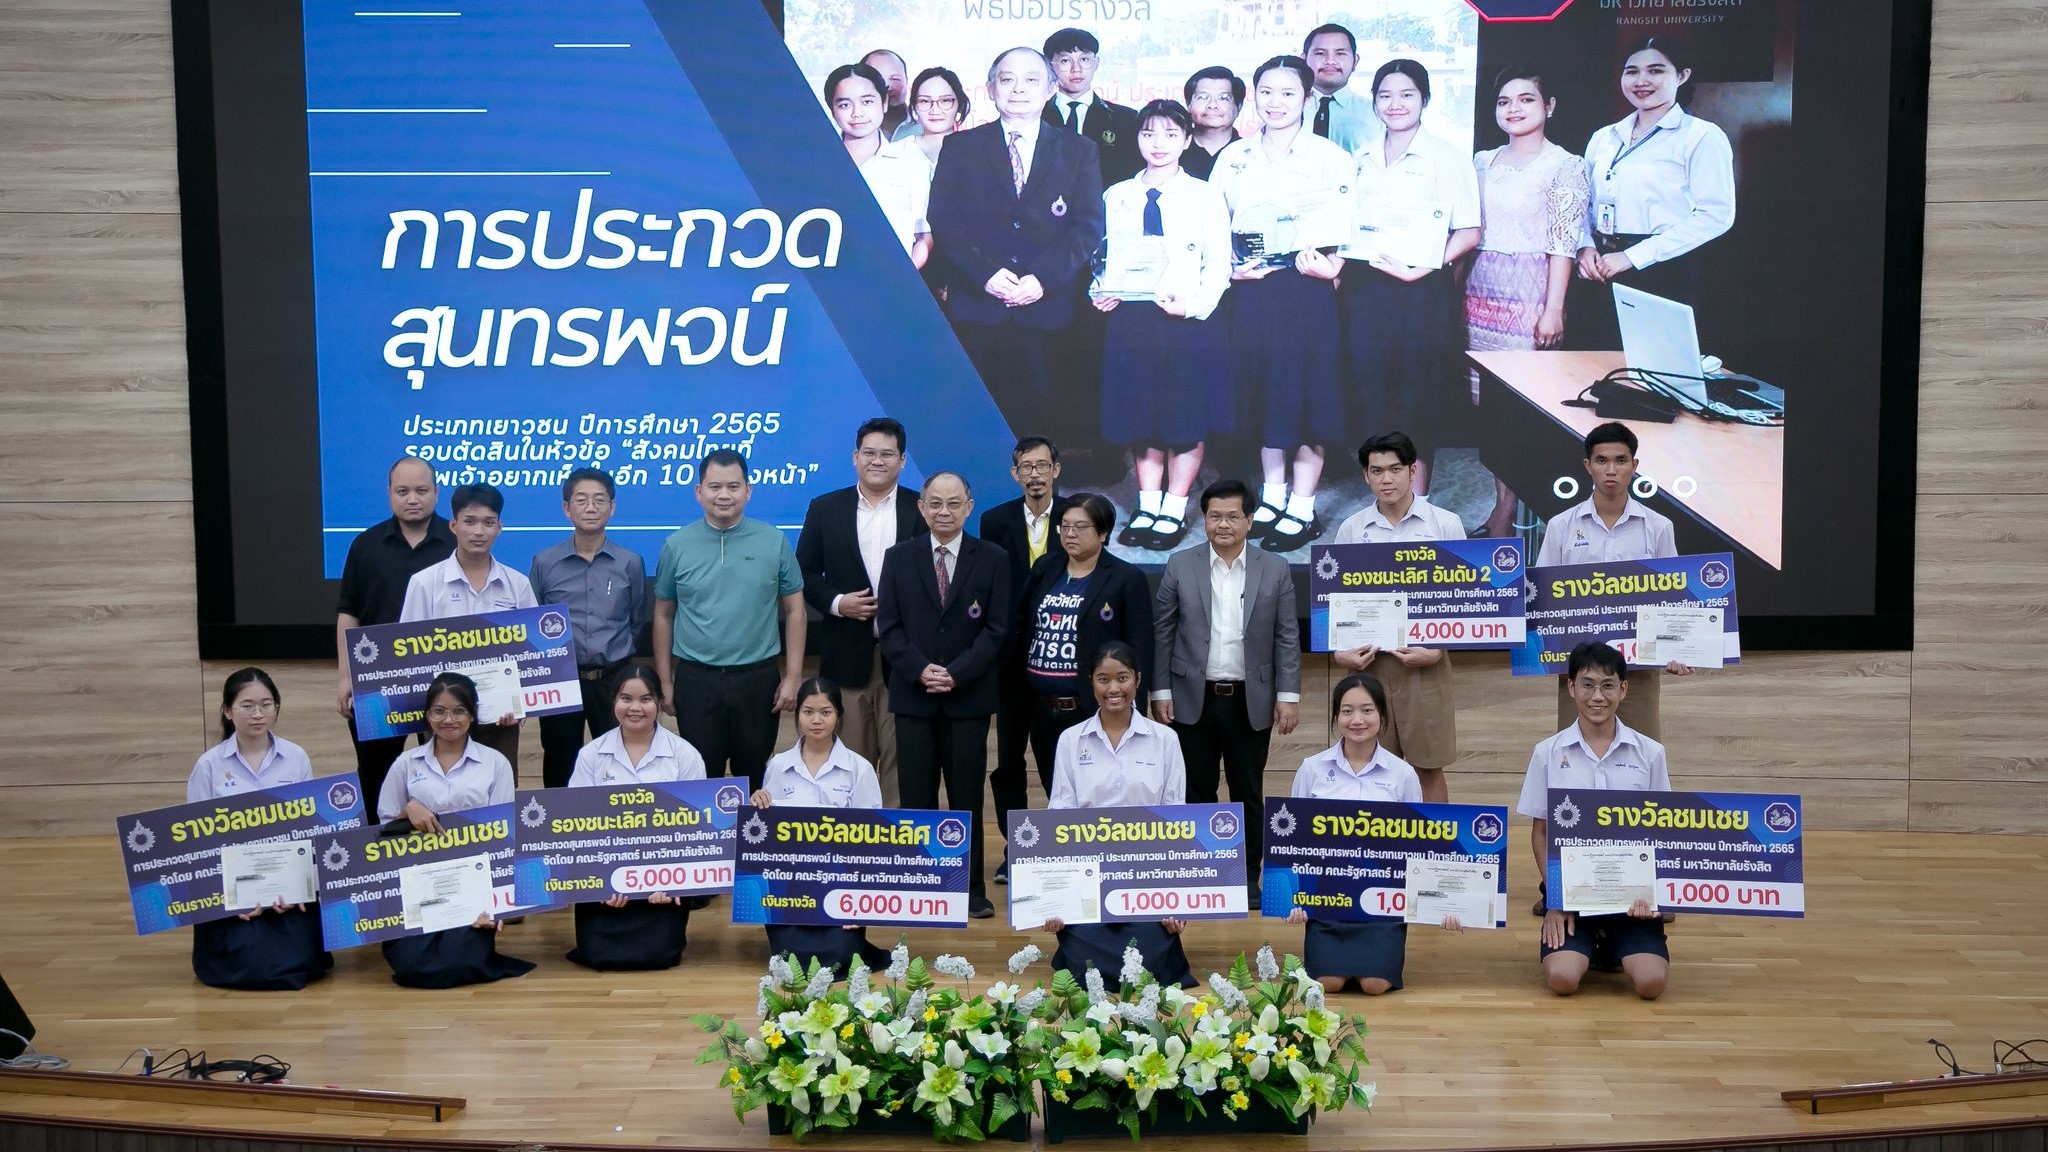 คณะรัฐศาสตร์ ม.รังสิต จัดการประกวสุนทรพจน์ “สังคมไทยที่ข้าพเจ้าอยากเห็นในอีก 10 ปี ข้างหน้า”